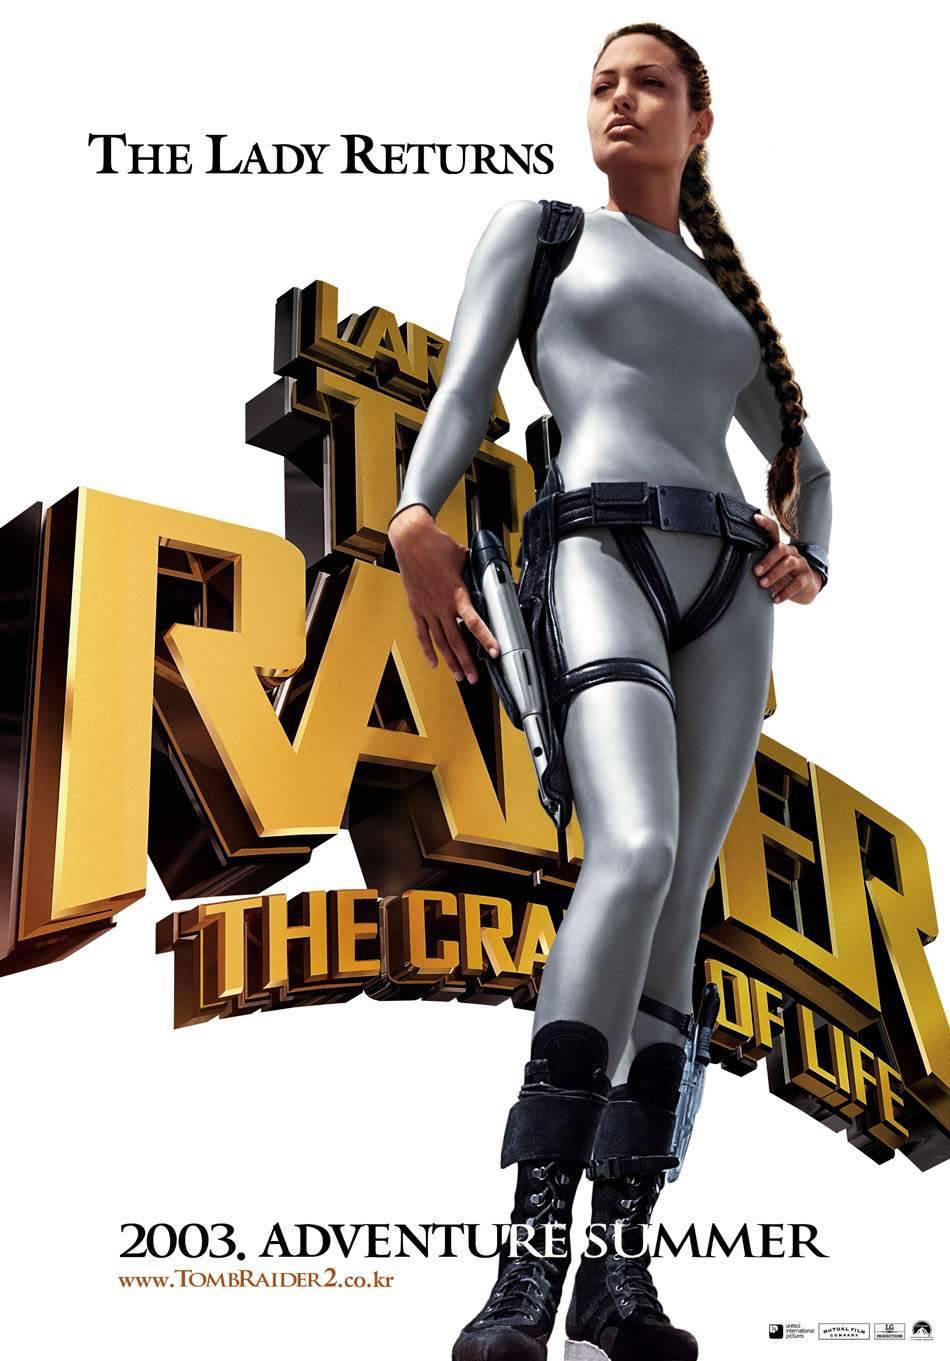 Смотреть фильм онлайн:Лара Крофт: Расхитительница гробниц 2 - Колыбель жизни / Lara Croft Tomb Raider: The Cradle of Life